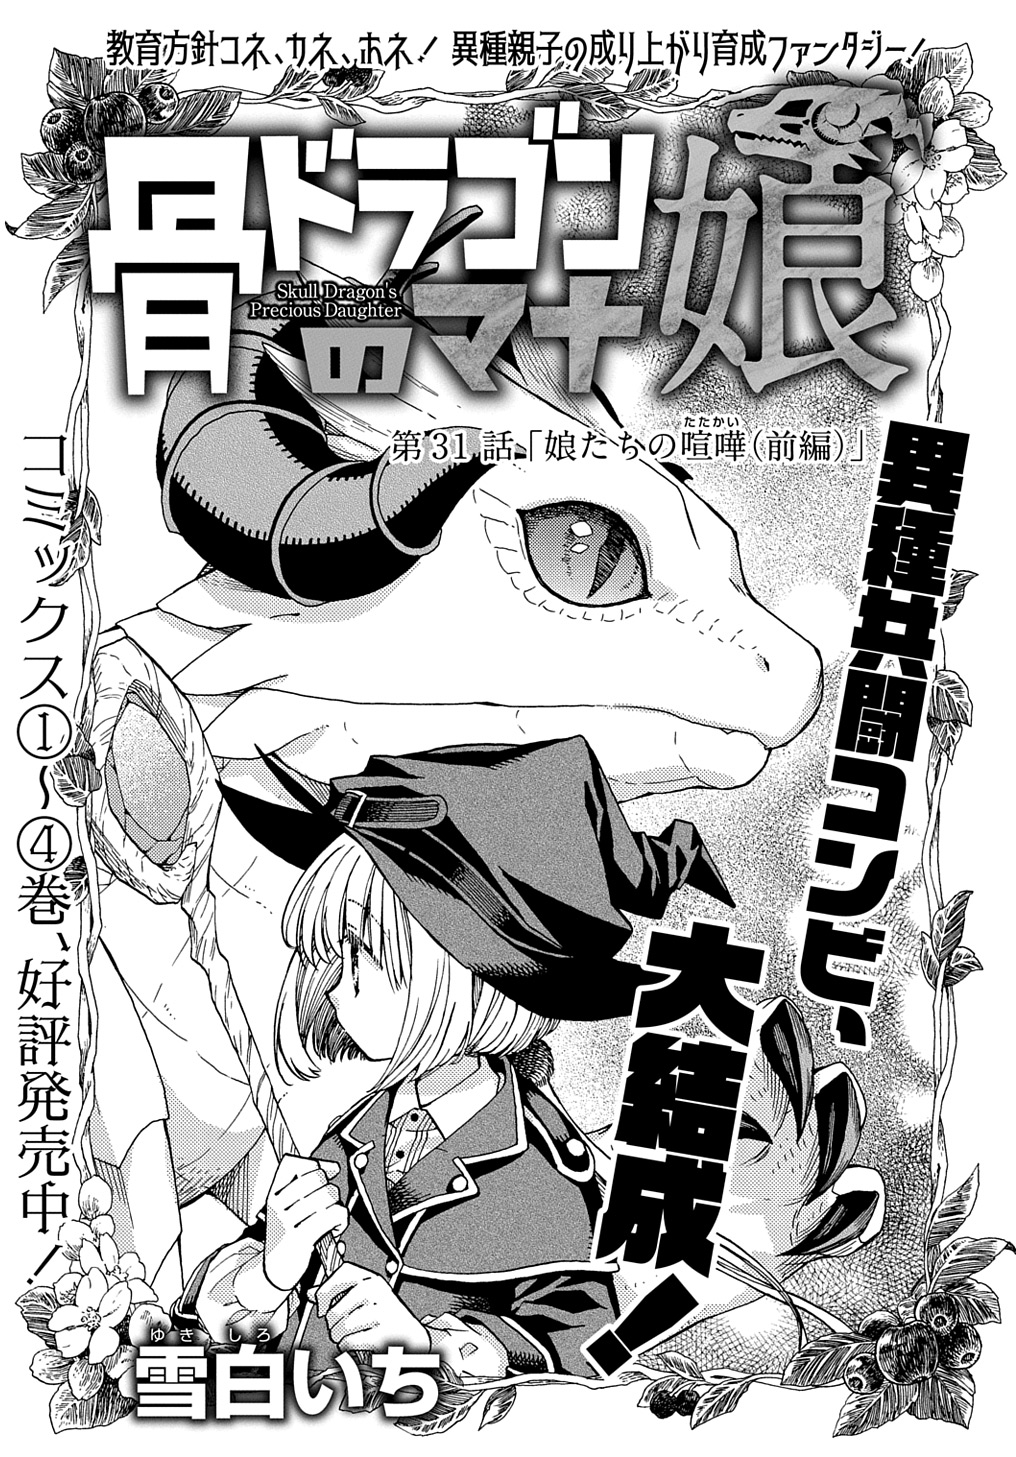 Hone Dragon no Mana Musume - Chapter 31.1 - Page 1